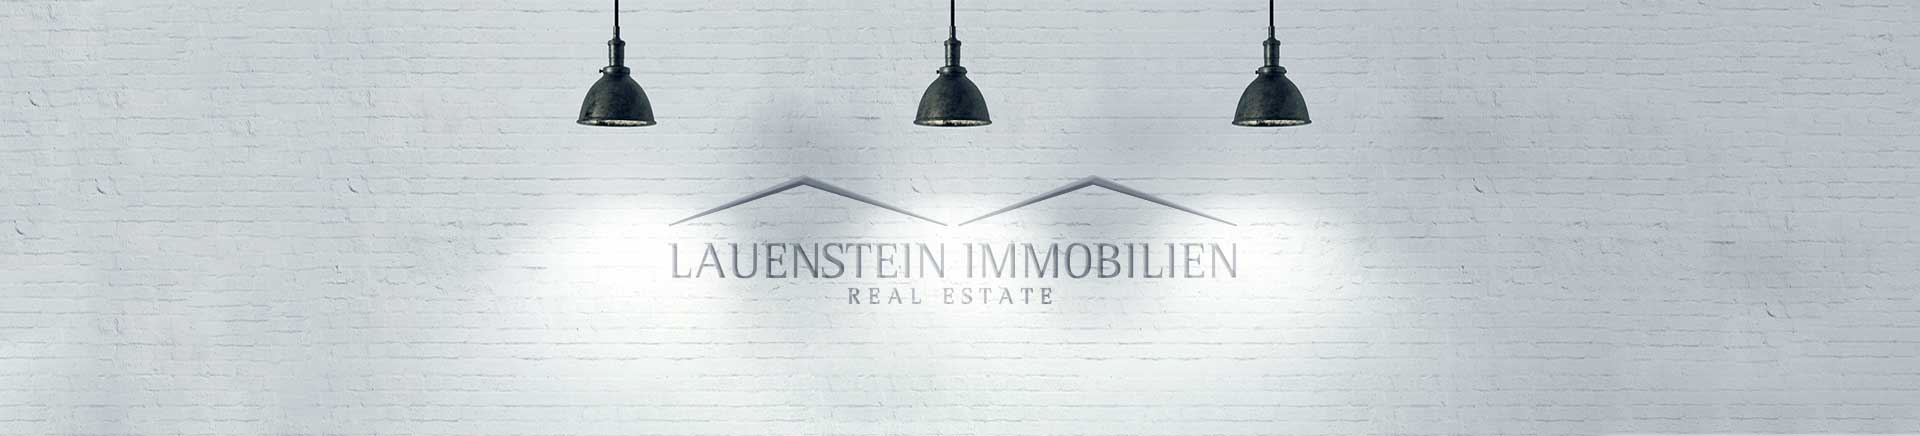 Lauenstein Immobilien Logo